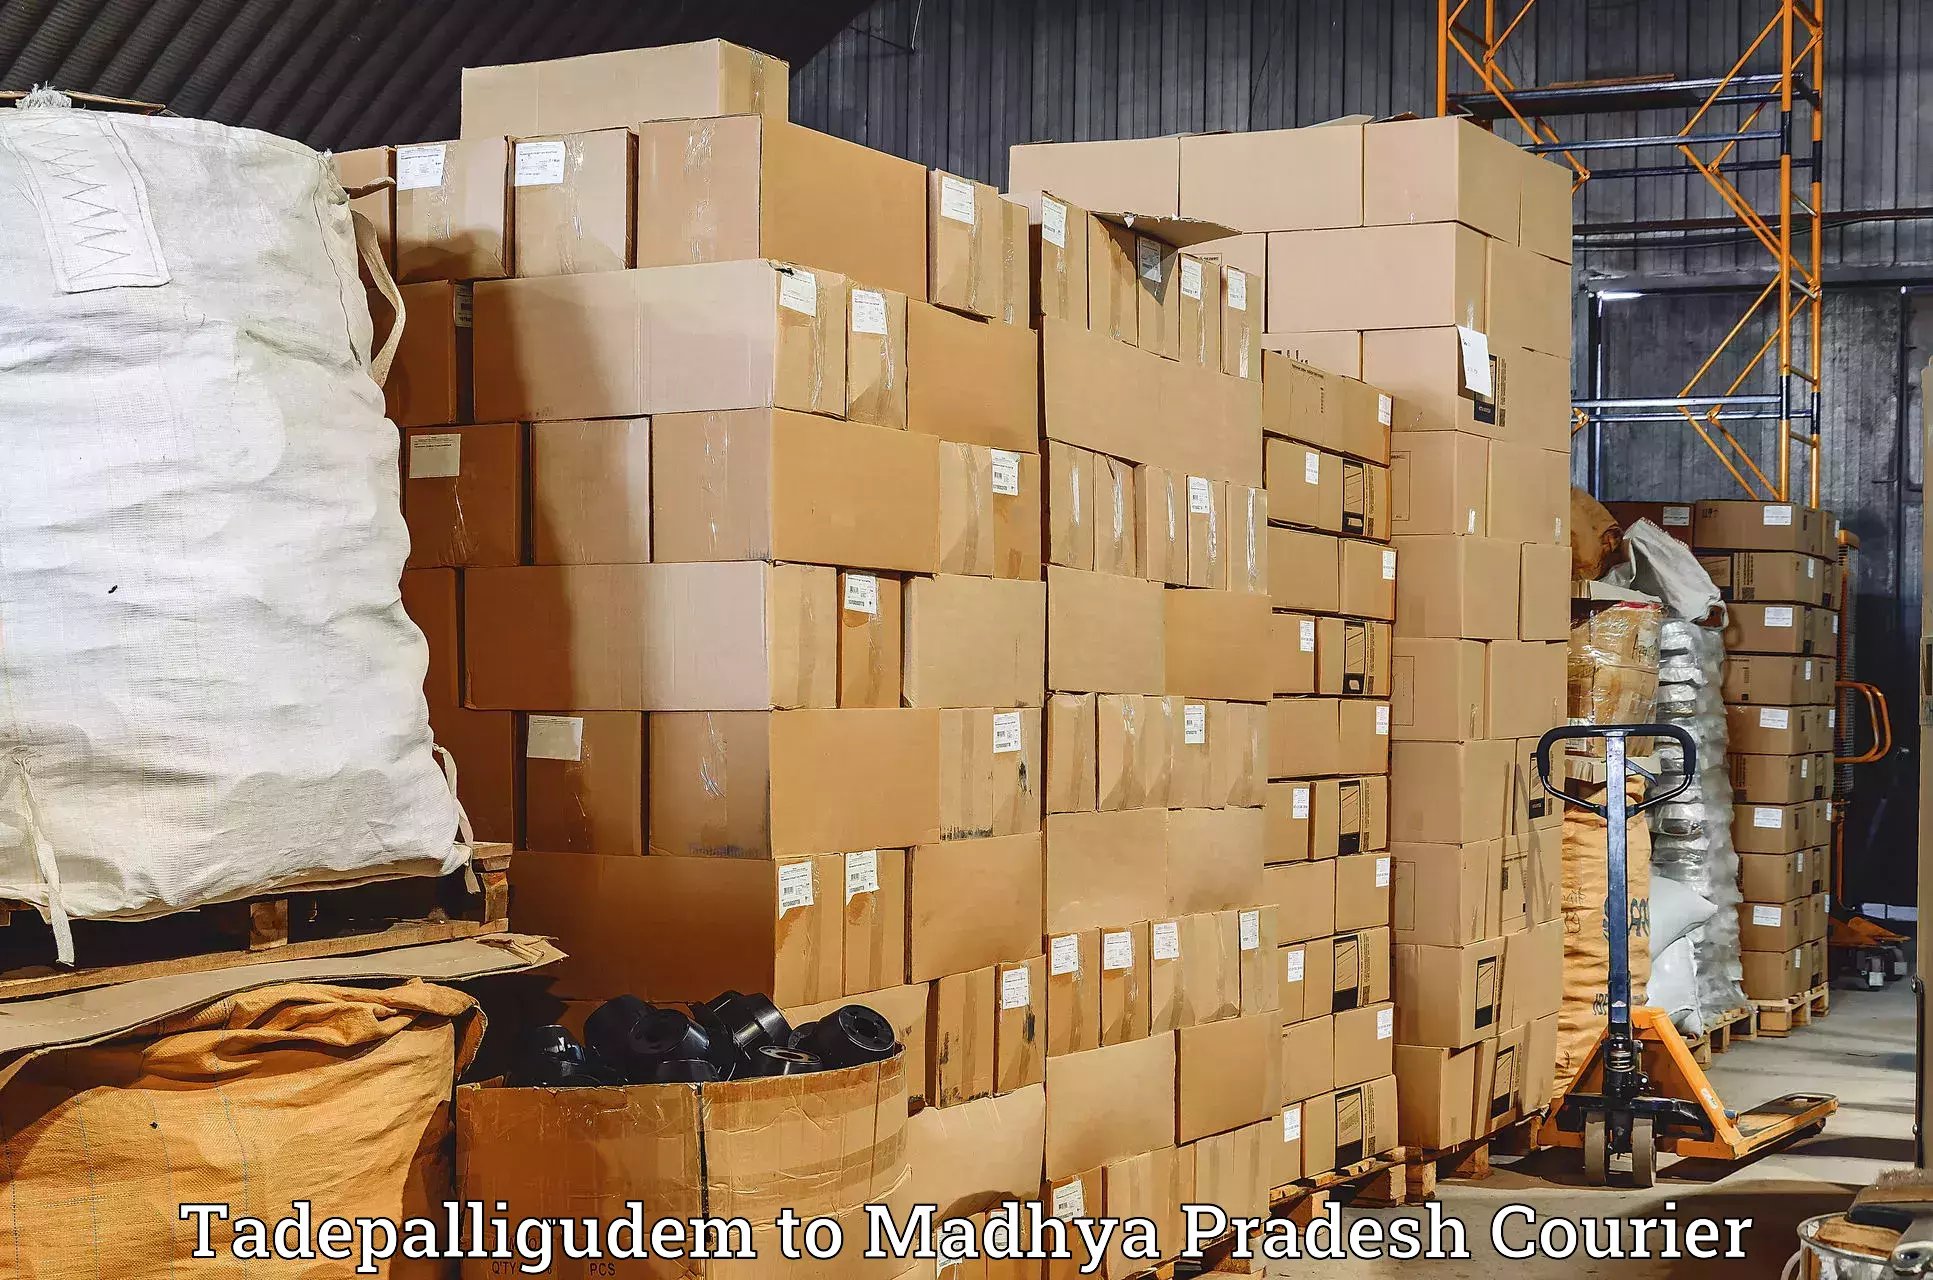 Next-generation courier services Tadepalligudem to Anuppur